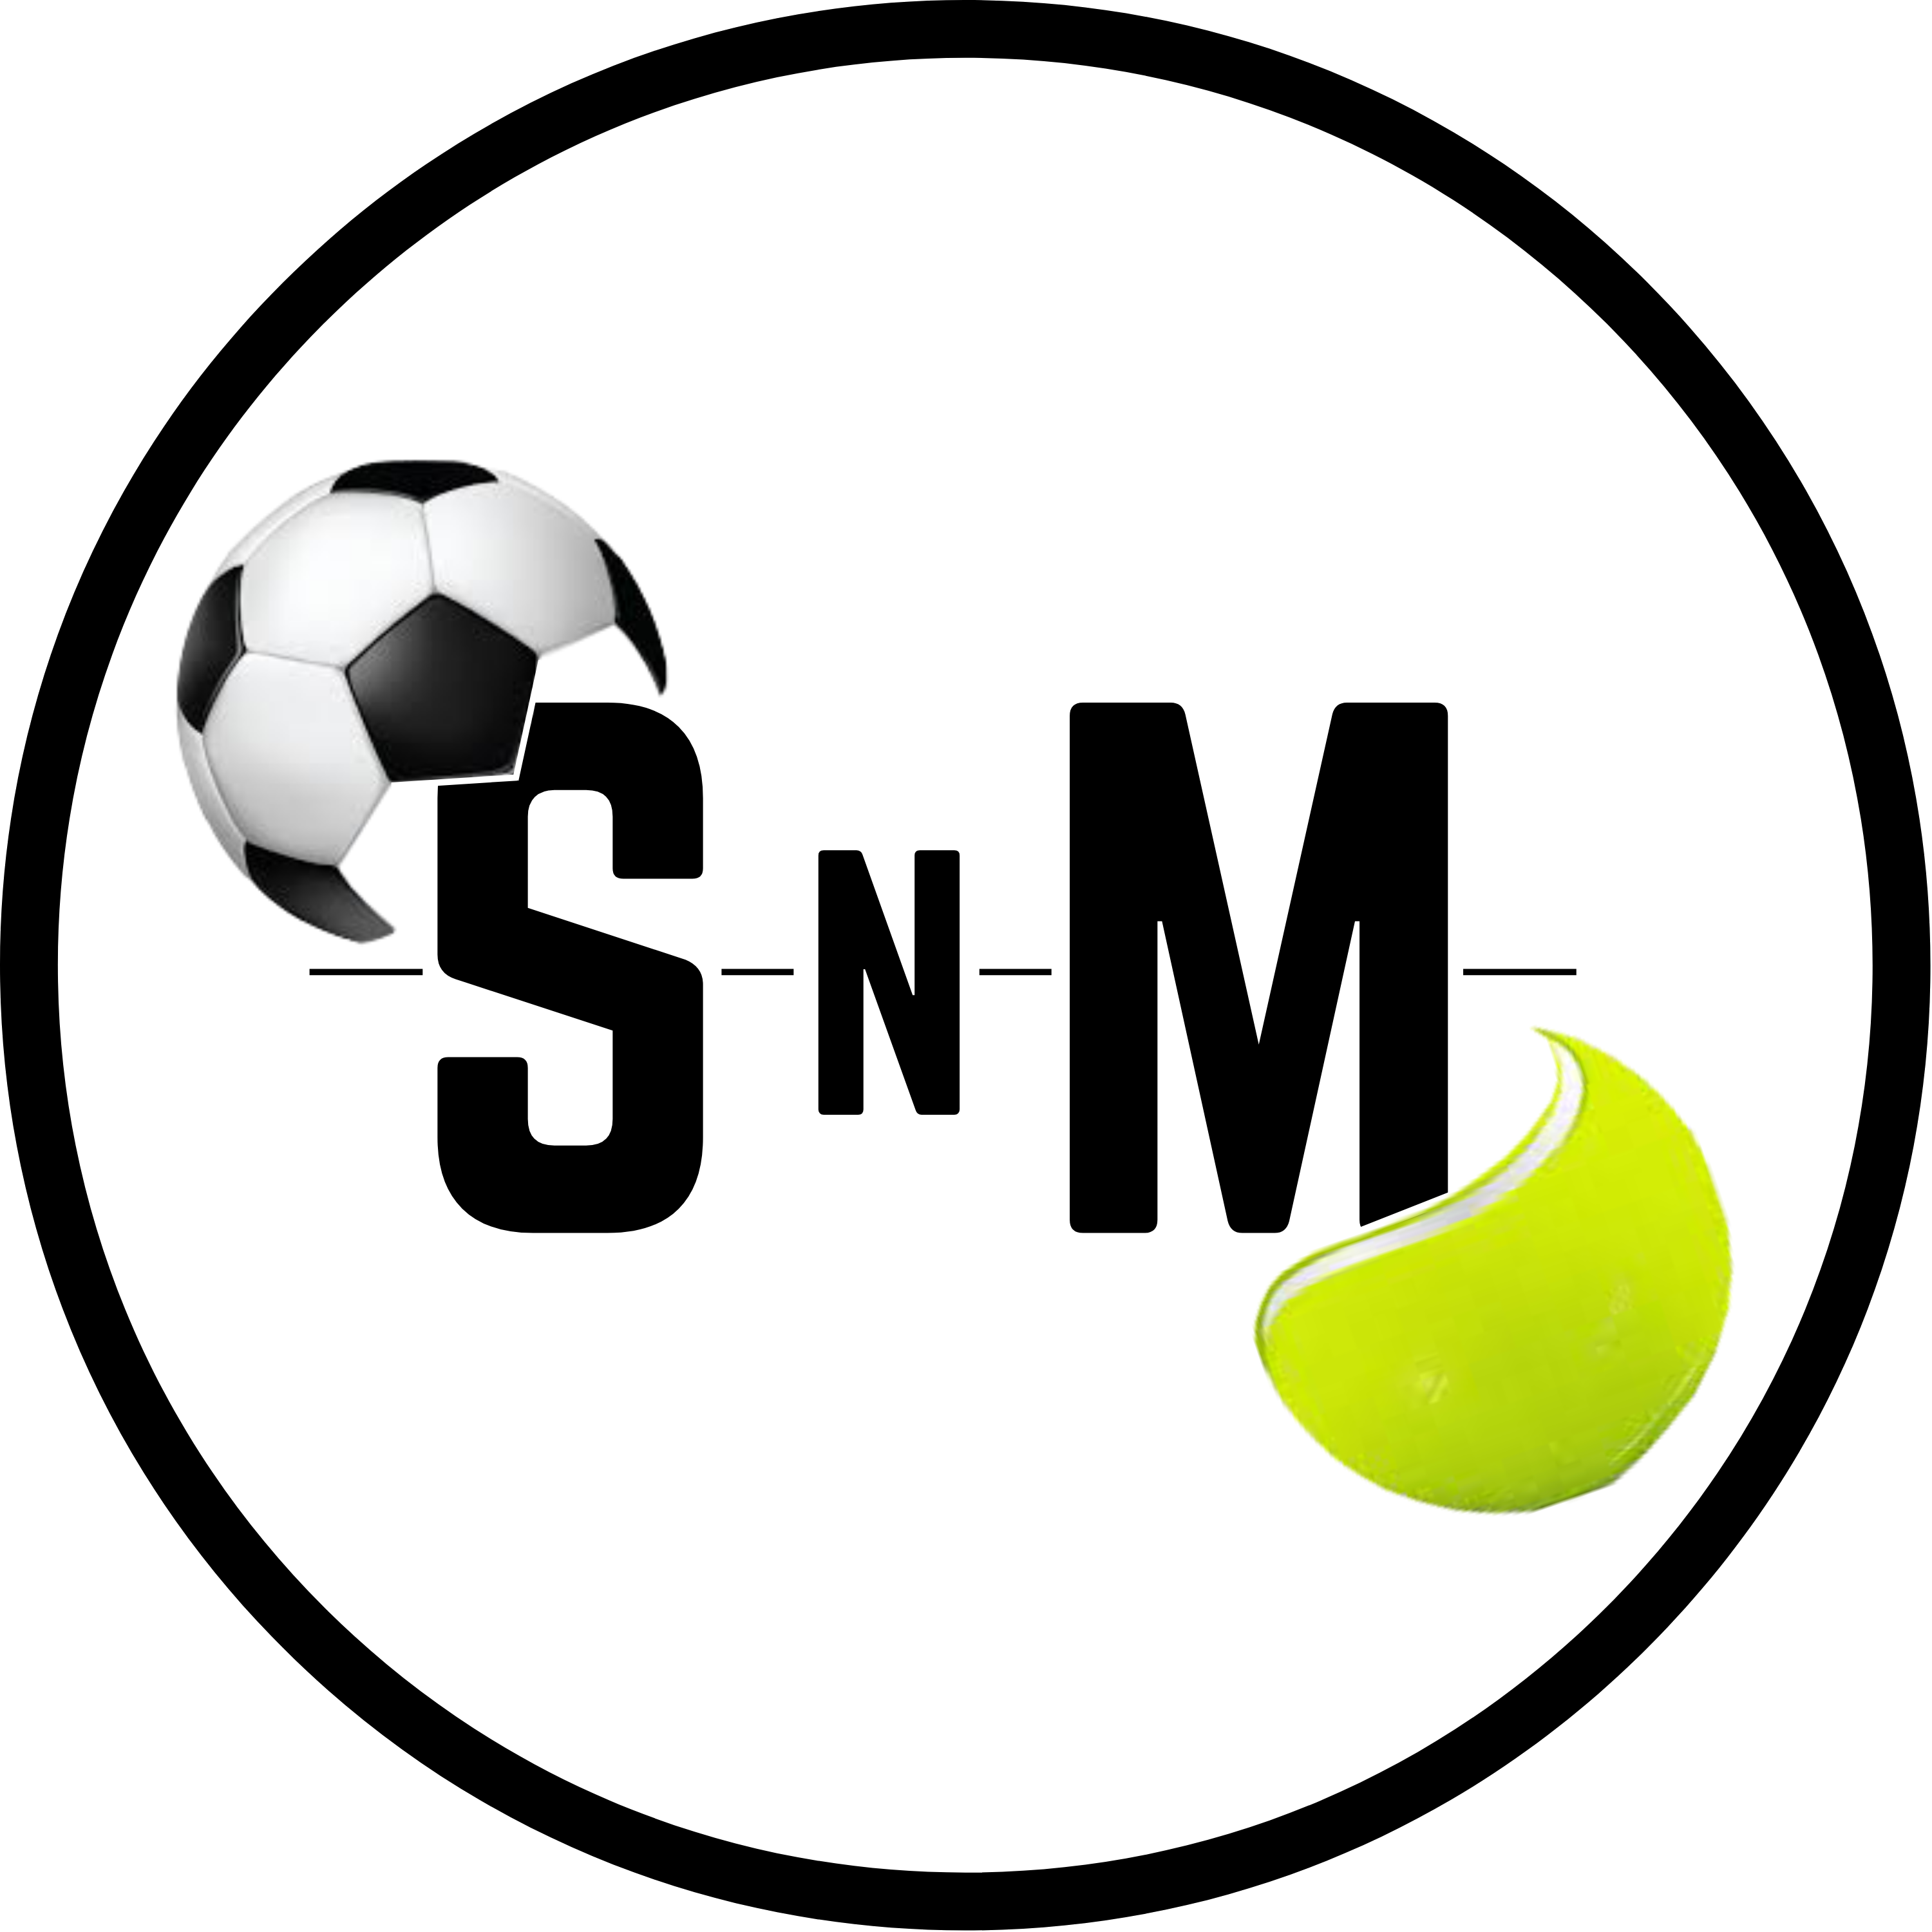 Vydělávej sázením | SnM Sport s.r.o.